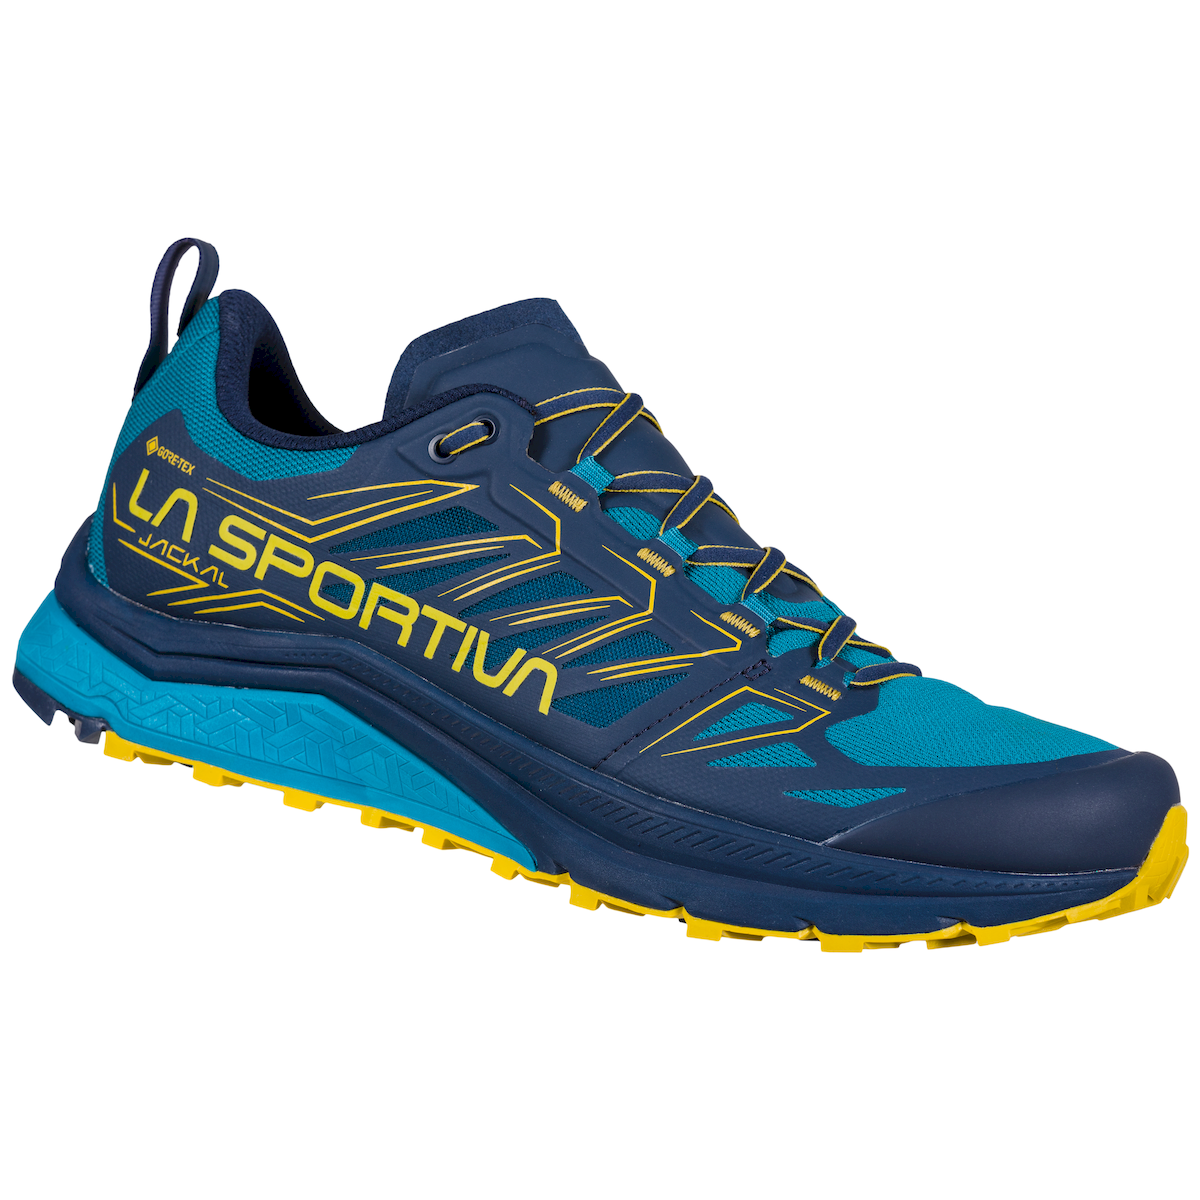 La Sportiva Jackal GTX - Trail running shoes - Men's